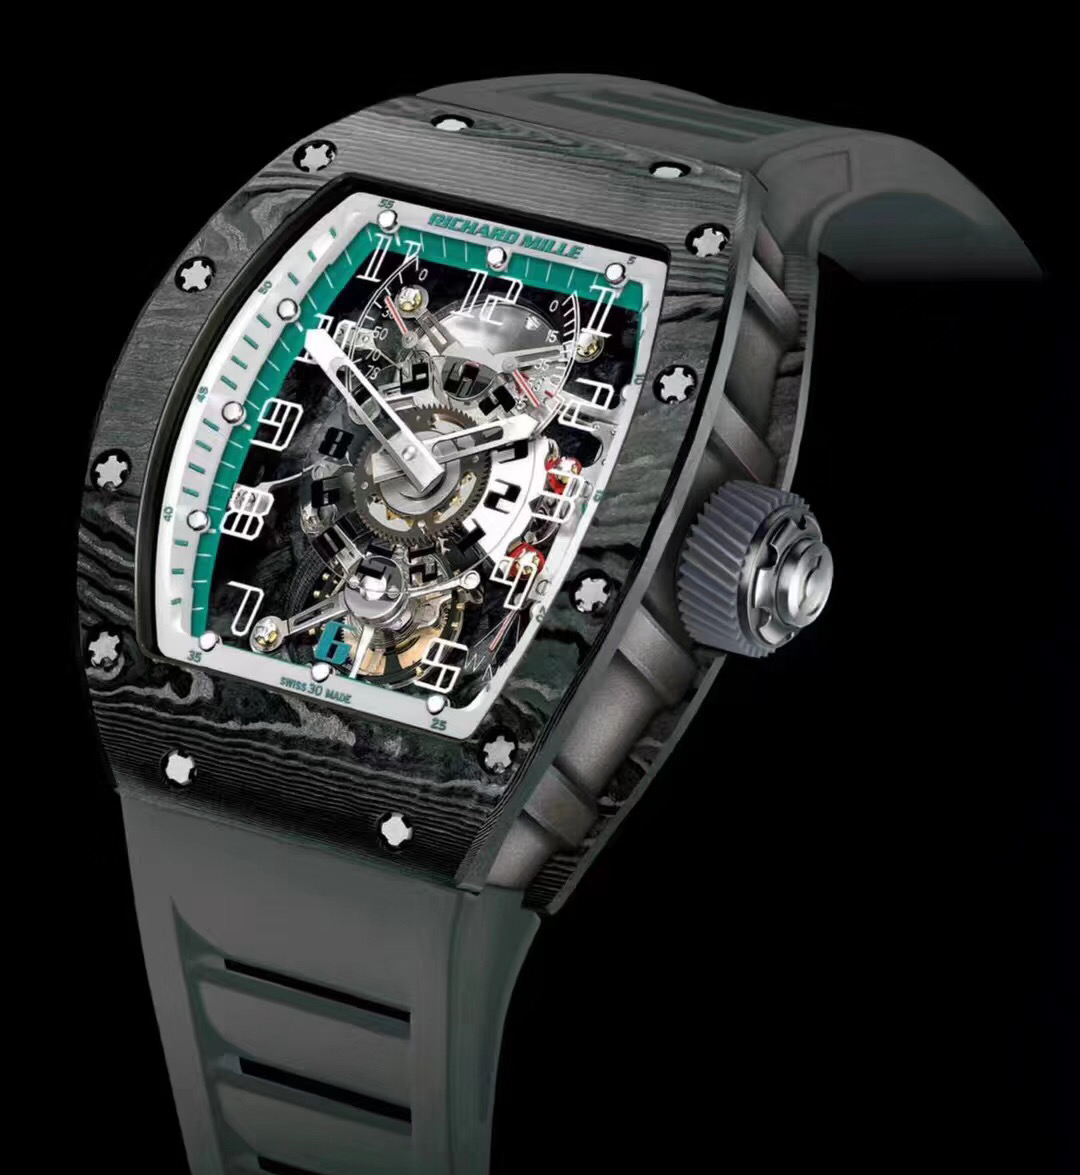 理查德米勒ntpt材质的手表近年来成为高阶表迷的狂热追捧